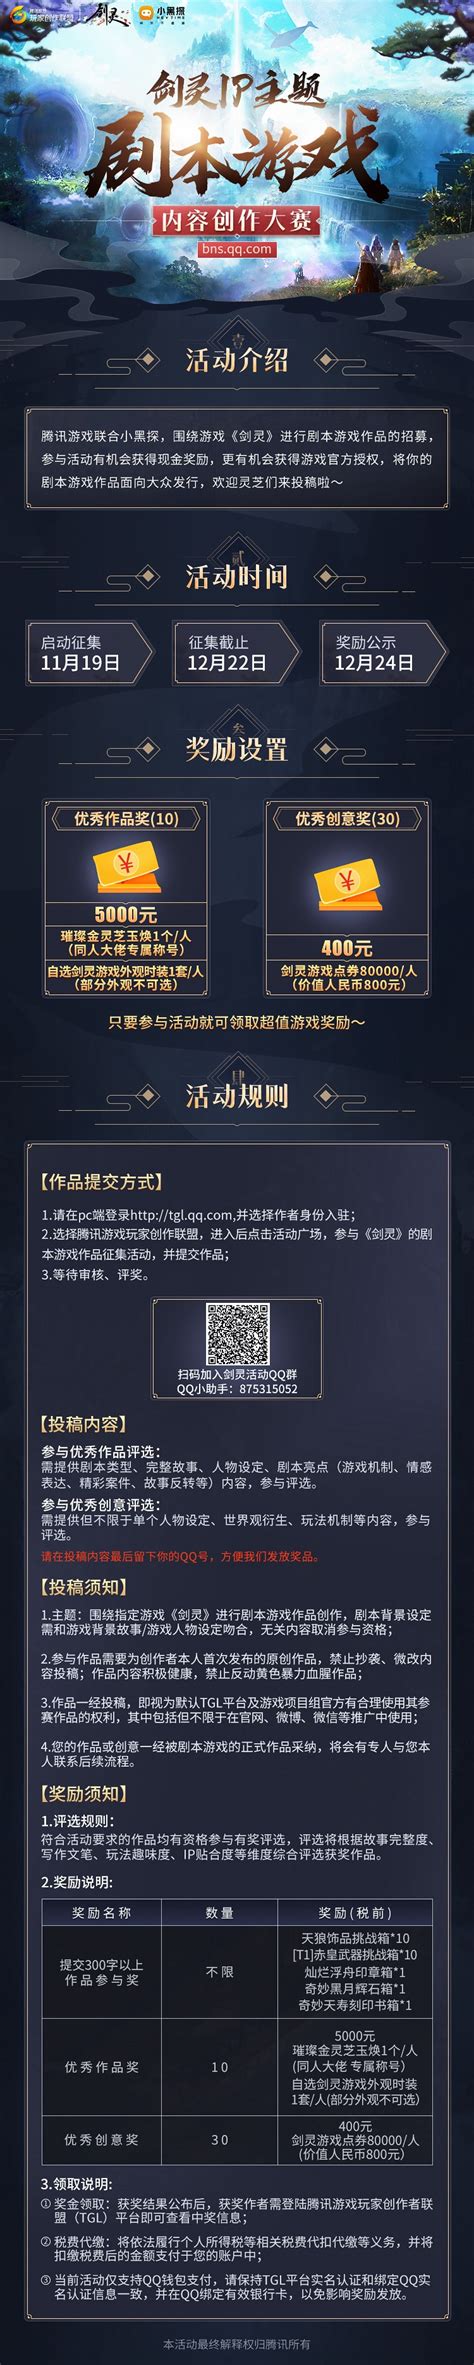 《剑灵》剧本游戏作品招募正式开启-剑灵官方网站-腾讯游戏